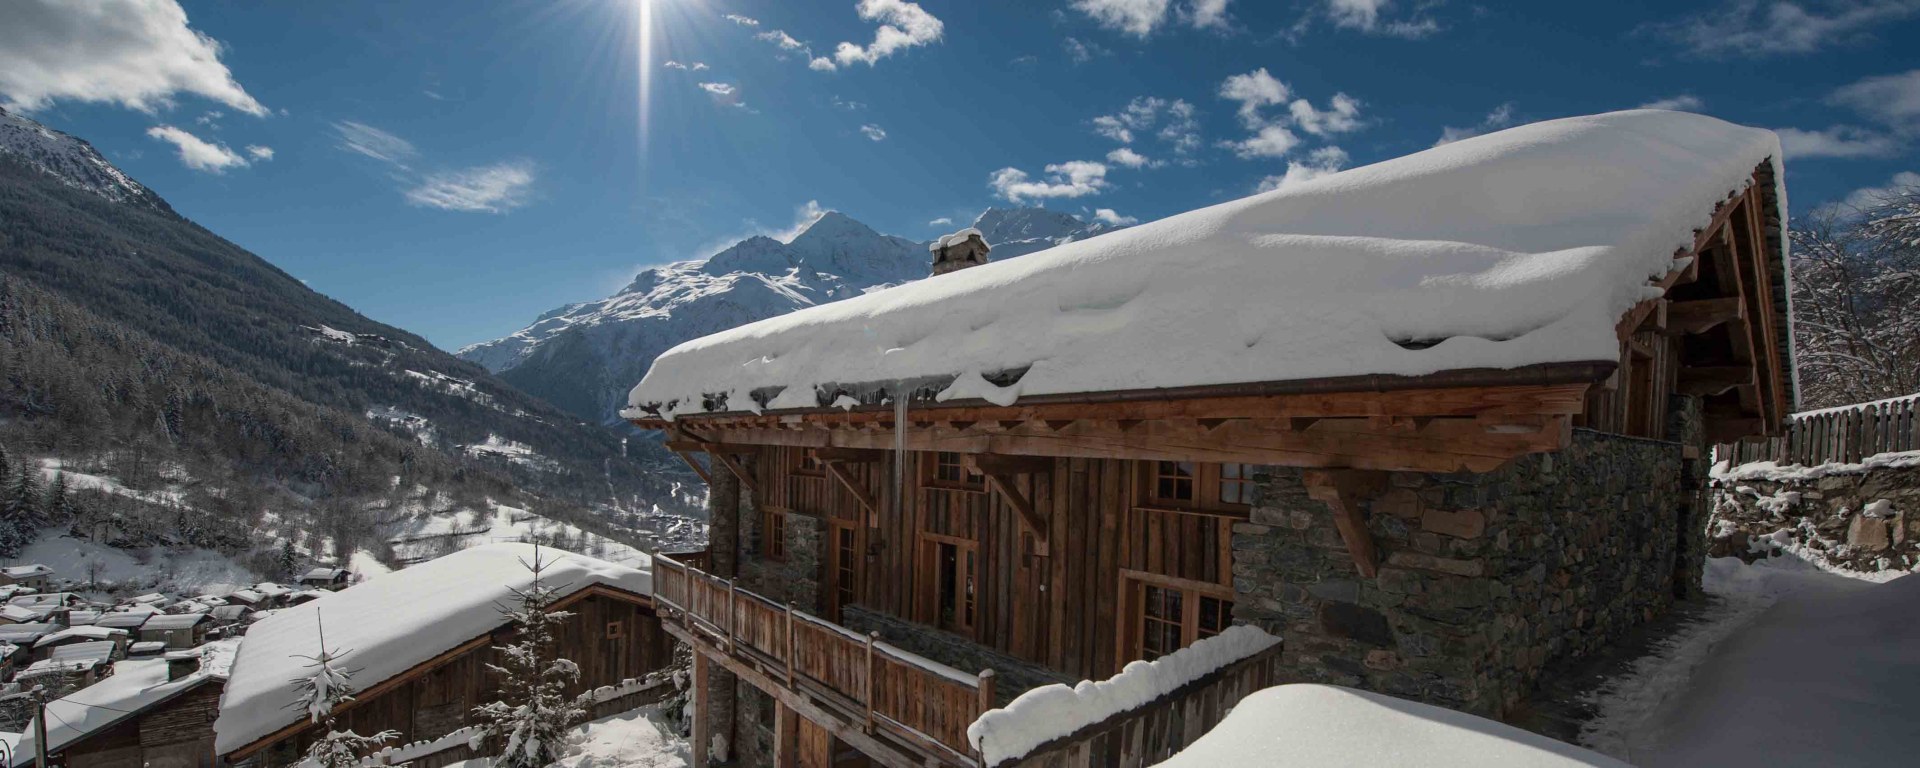 Ski Chalet mit Service in Frankreich mieten - Chalet Pelerin